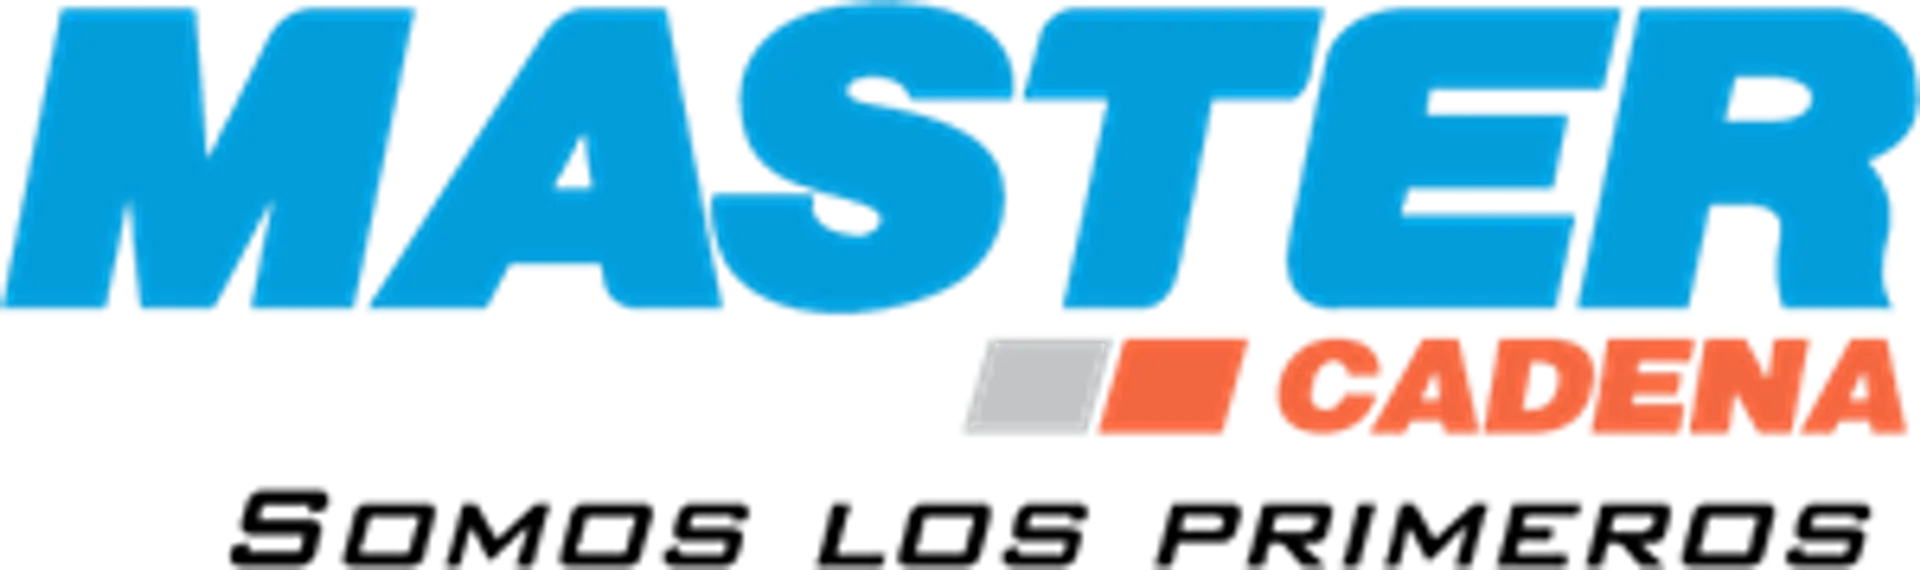 MASTER CADENA logo